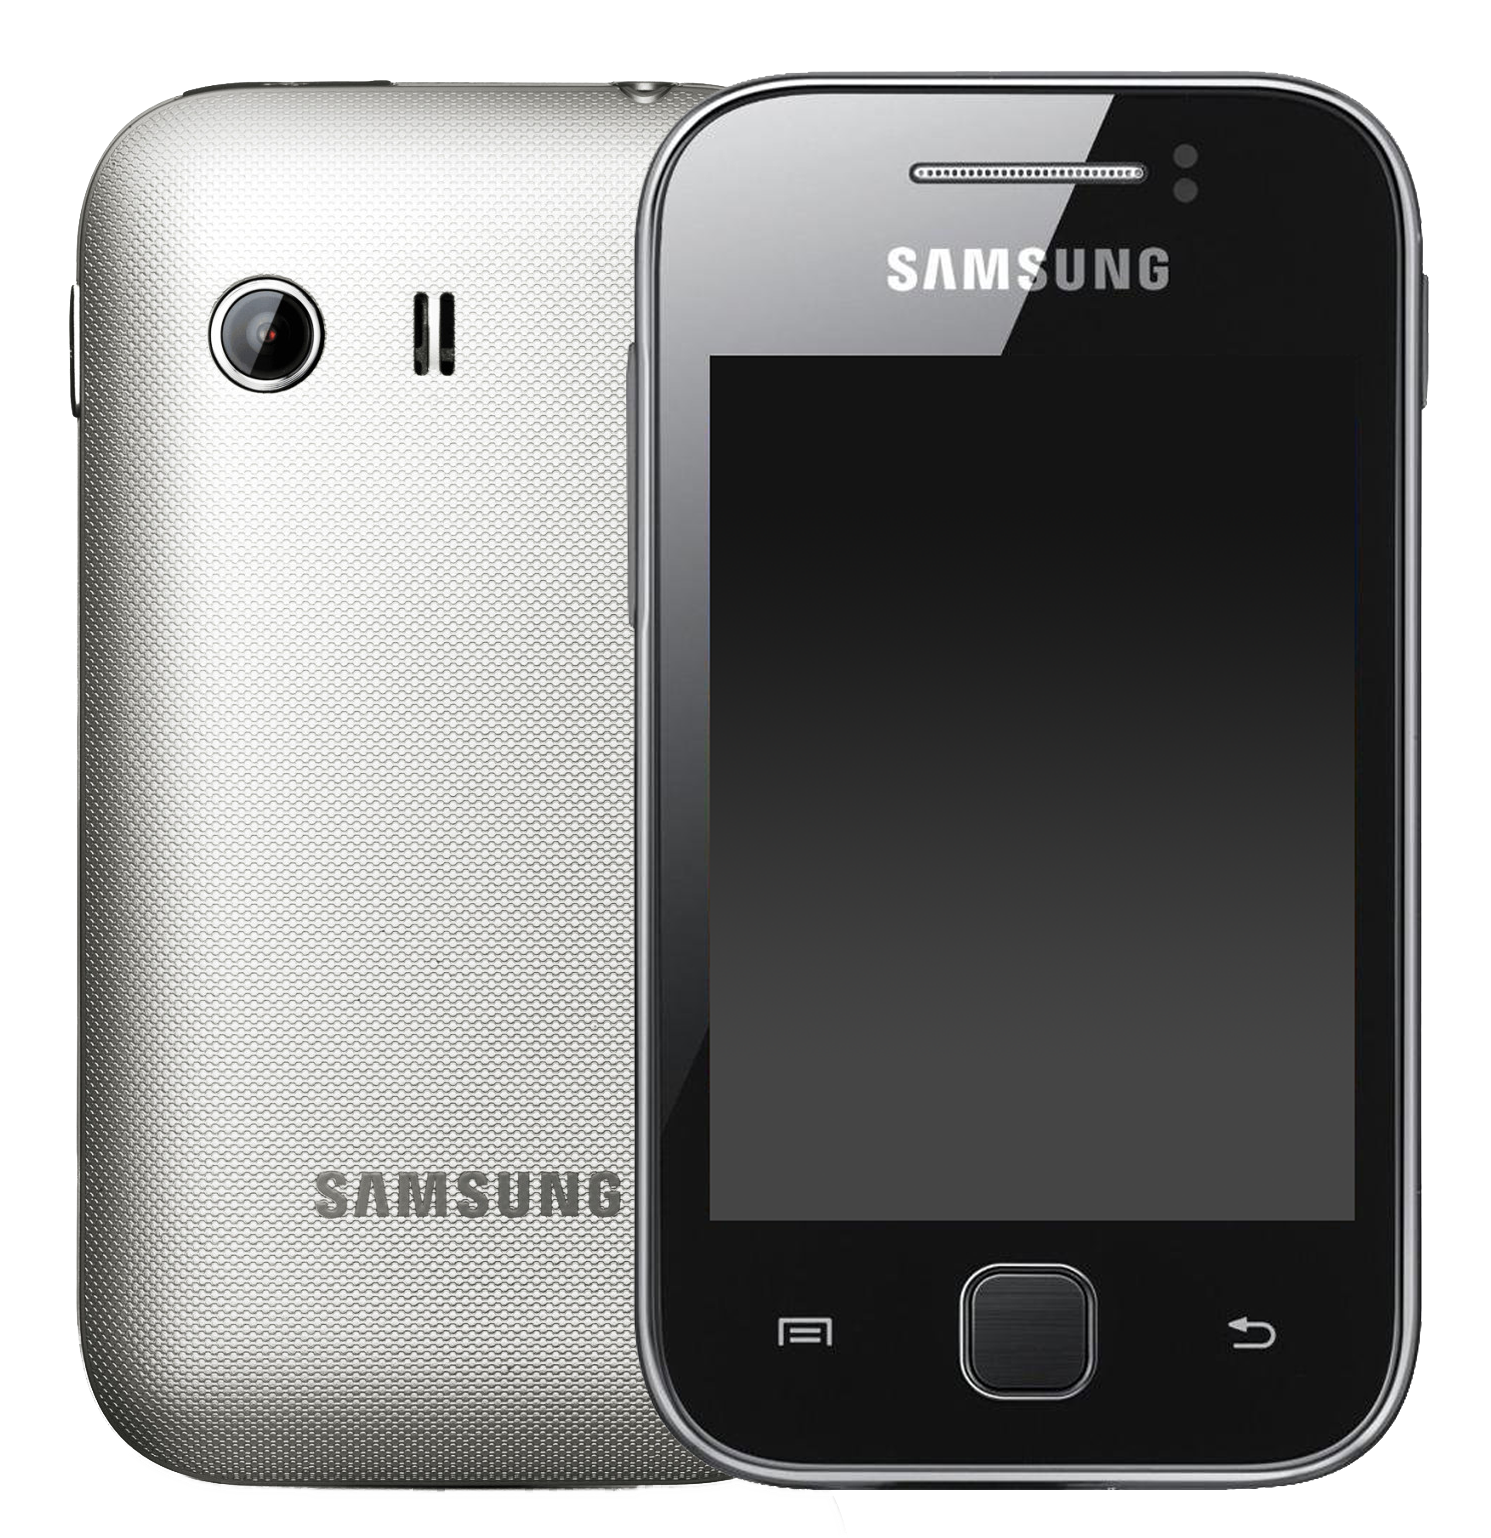 Samsung Galaxy Y grau - Ohne Vertrag